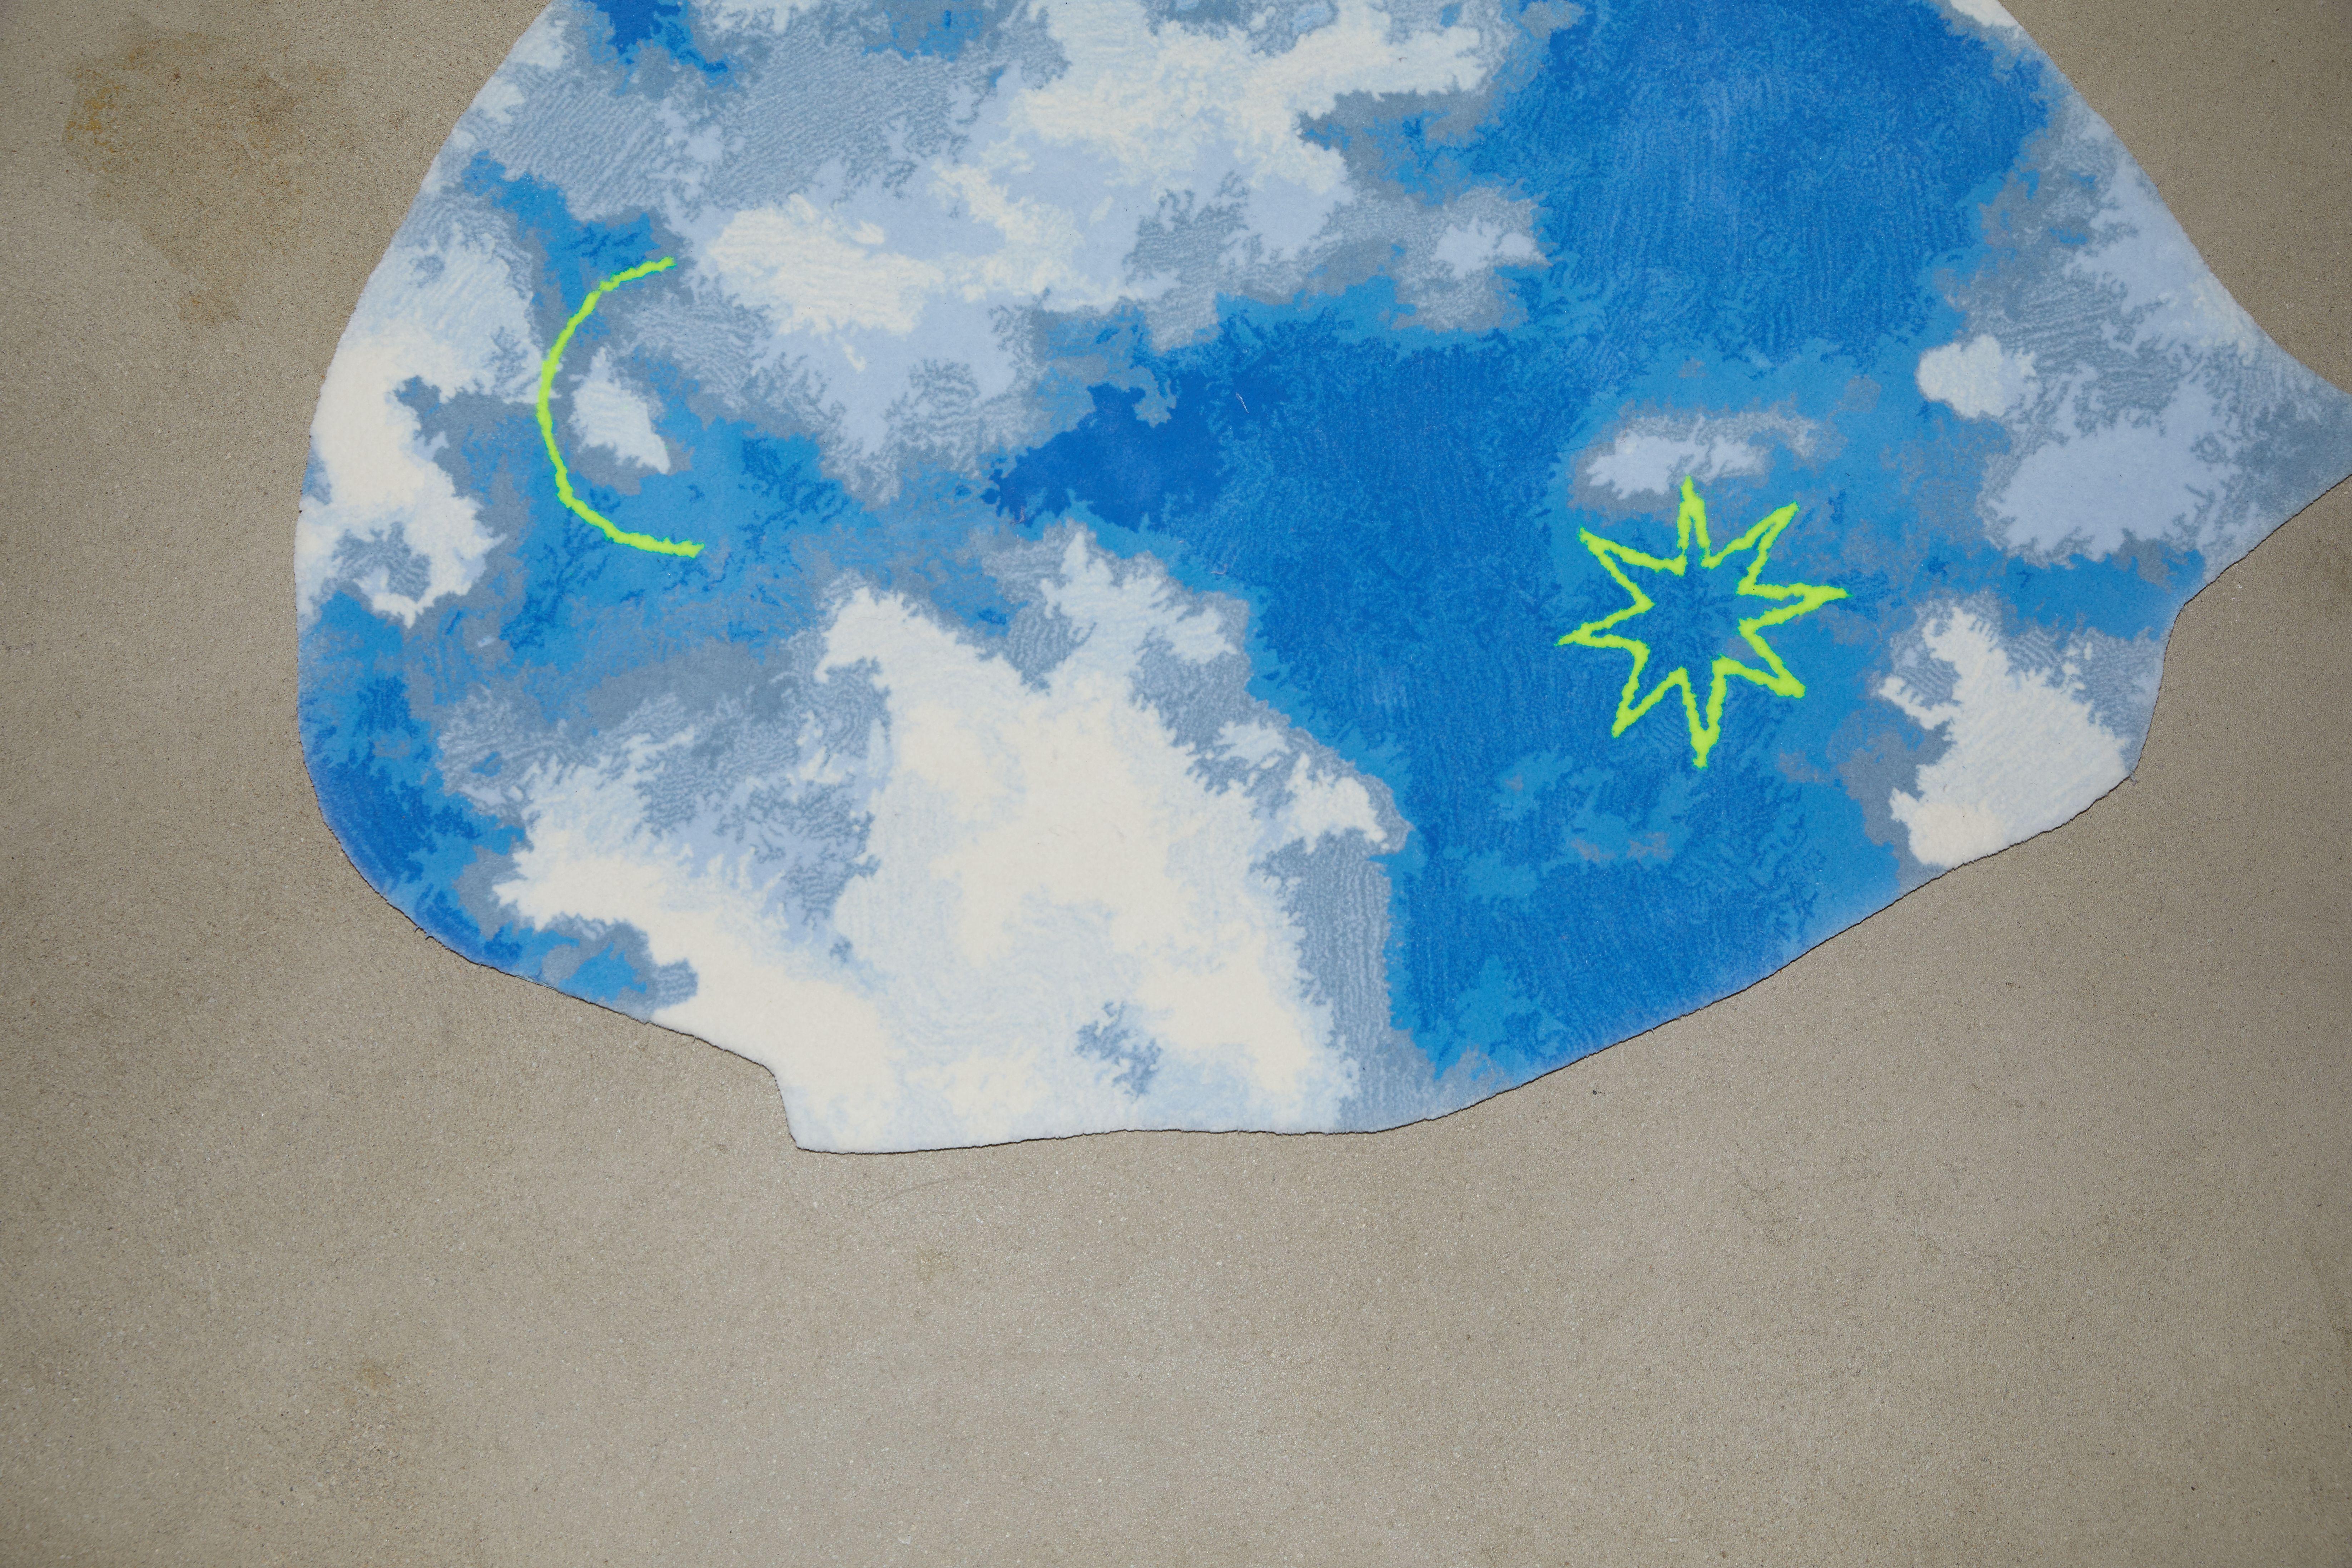 Wolken-Teppich von Laroque Studio, handgetuftet
Abmessungen: 100x100 cm
MATERIAL: Wolle/Acryl
Qualität: 500.000 Punkte

Es wäre fast unmöglich, nur eine Idee zu nennen, die die Collection 00 inspiriert hat. Es begann mit dem Periodensystem der